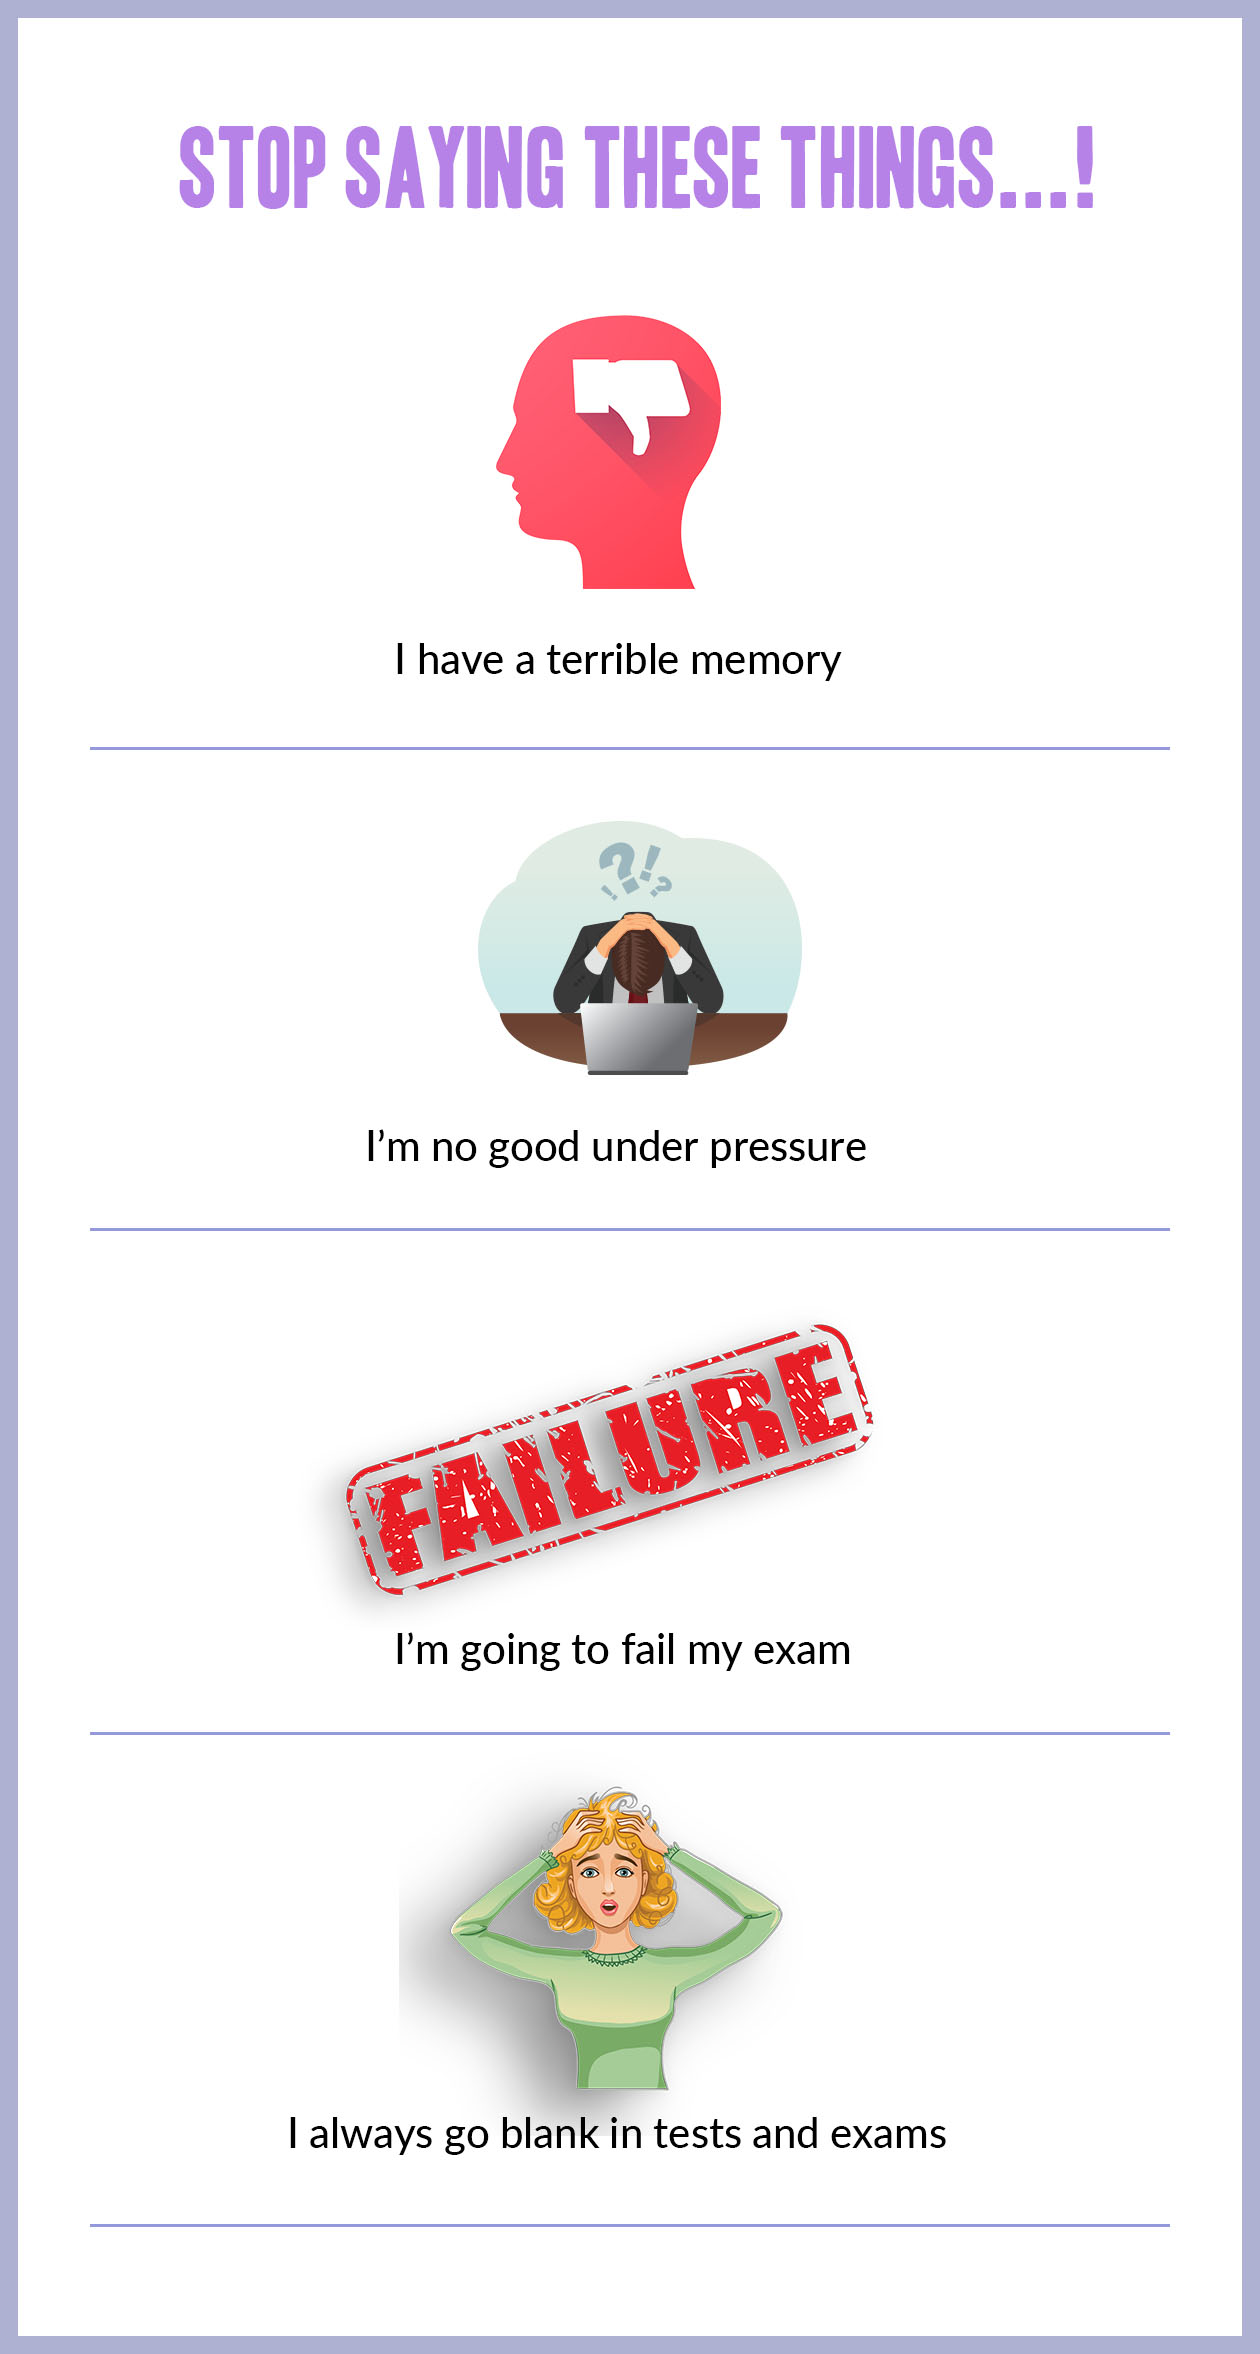 Beliefs that make exam anxiety worse